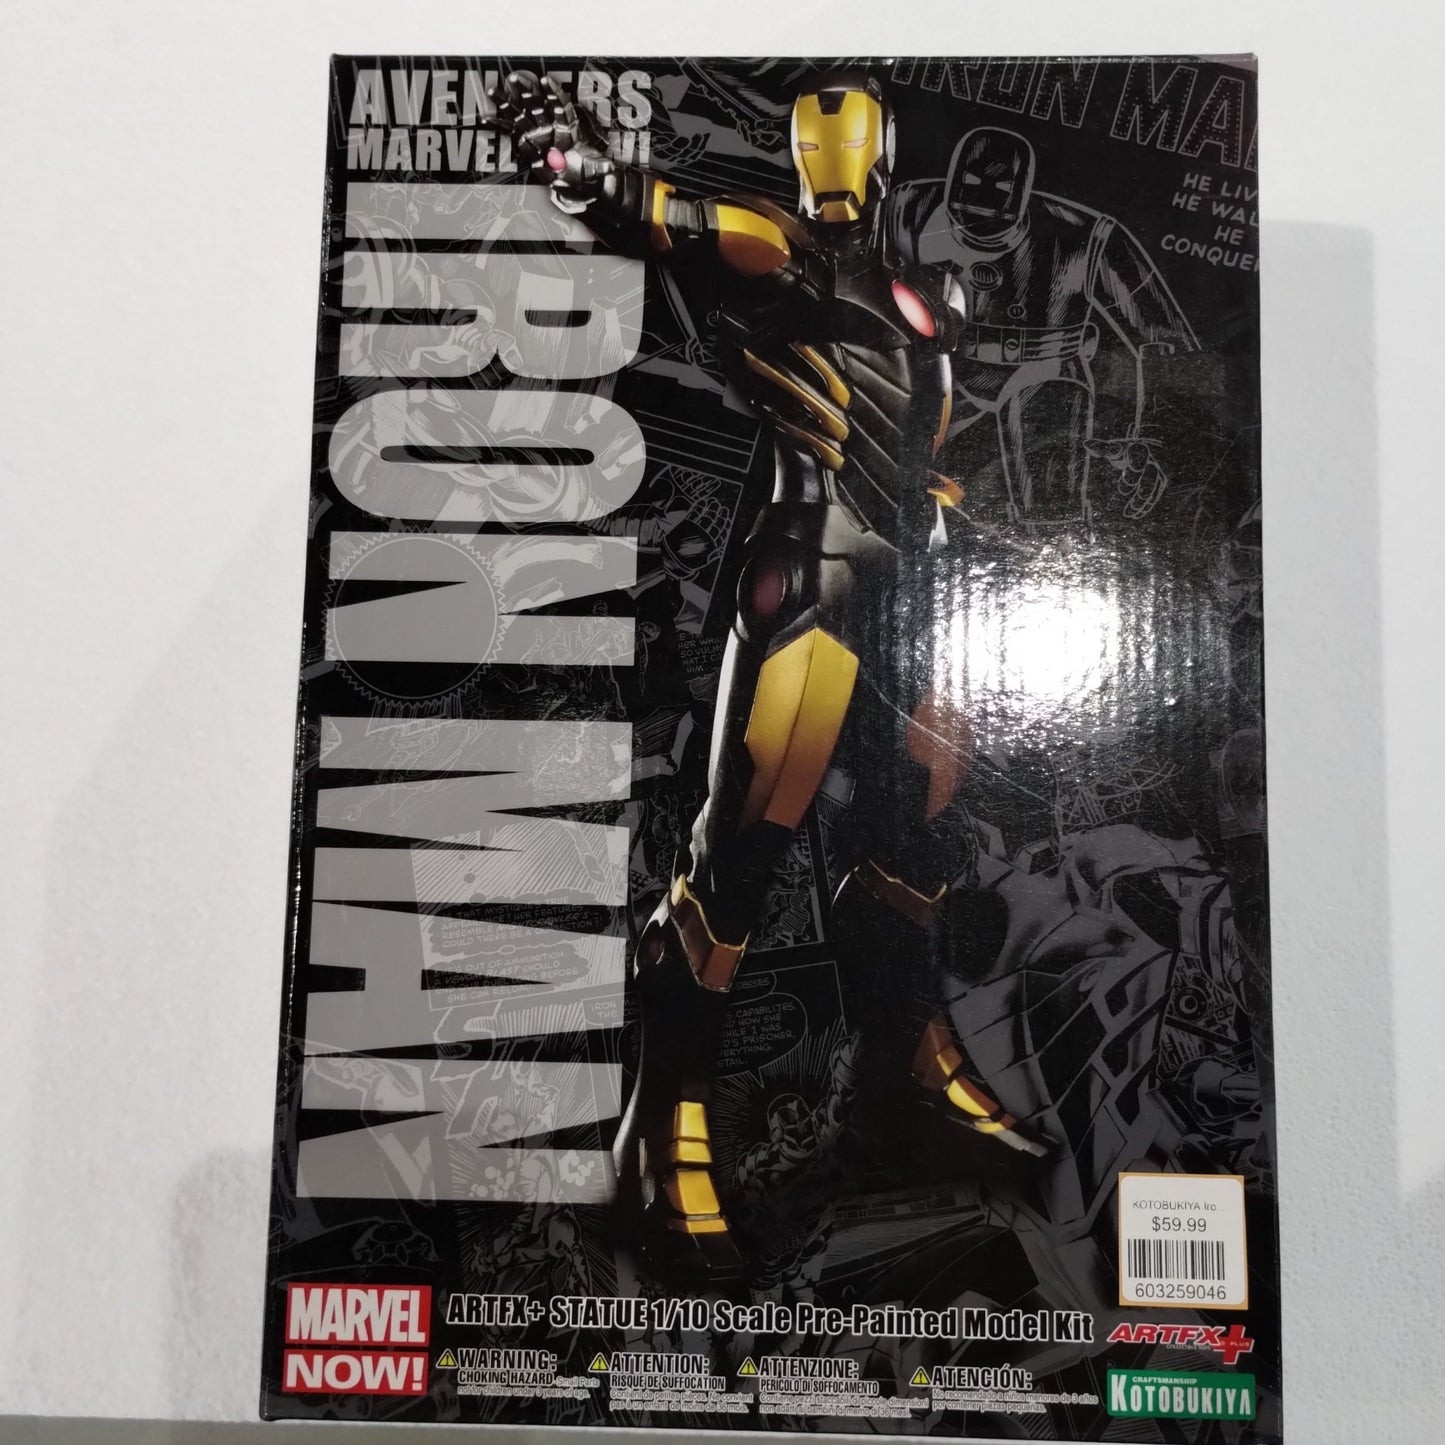 KOTOBUKIYA Iron Man Black Gold Marvel Comics Avenger Now ARTFX Statue PVC Figure